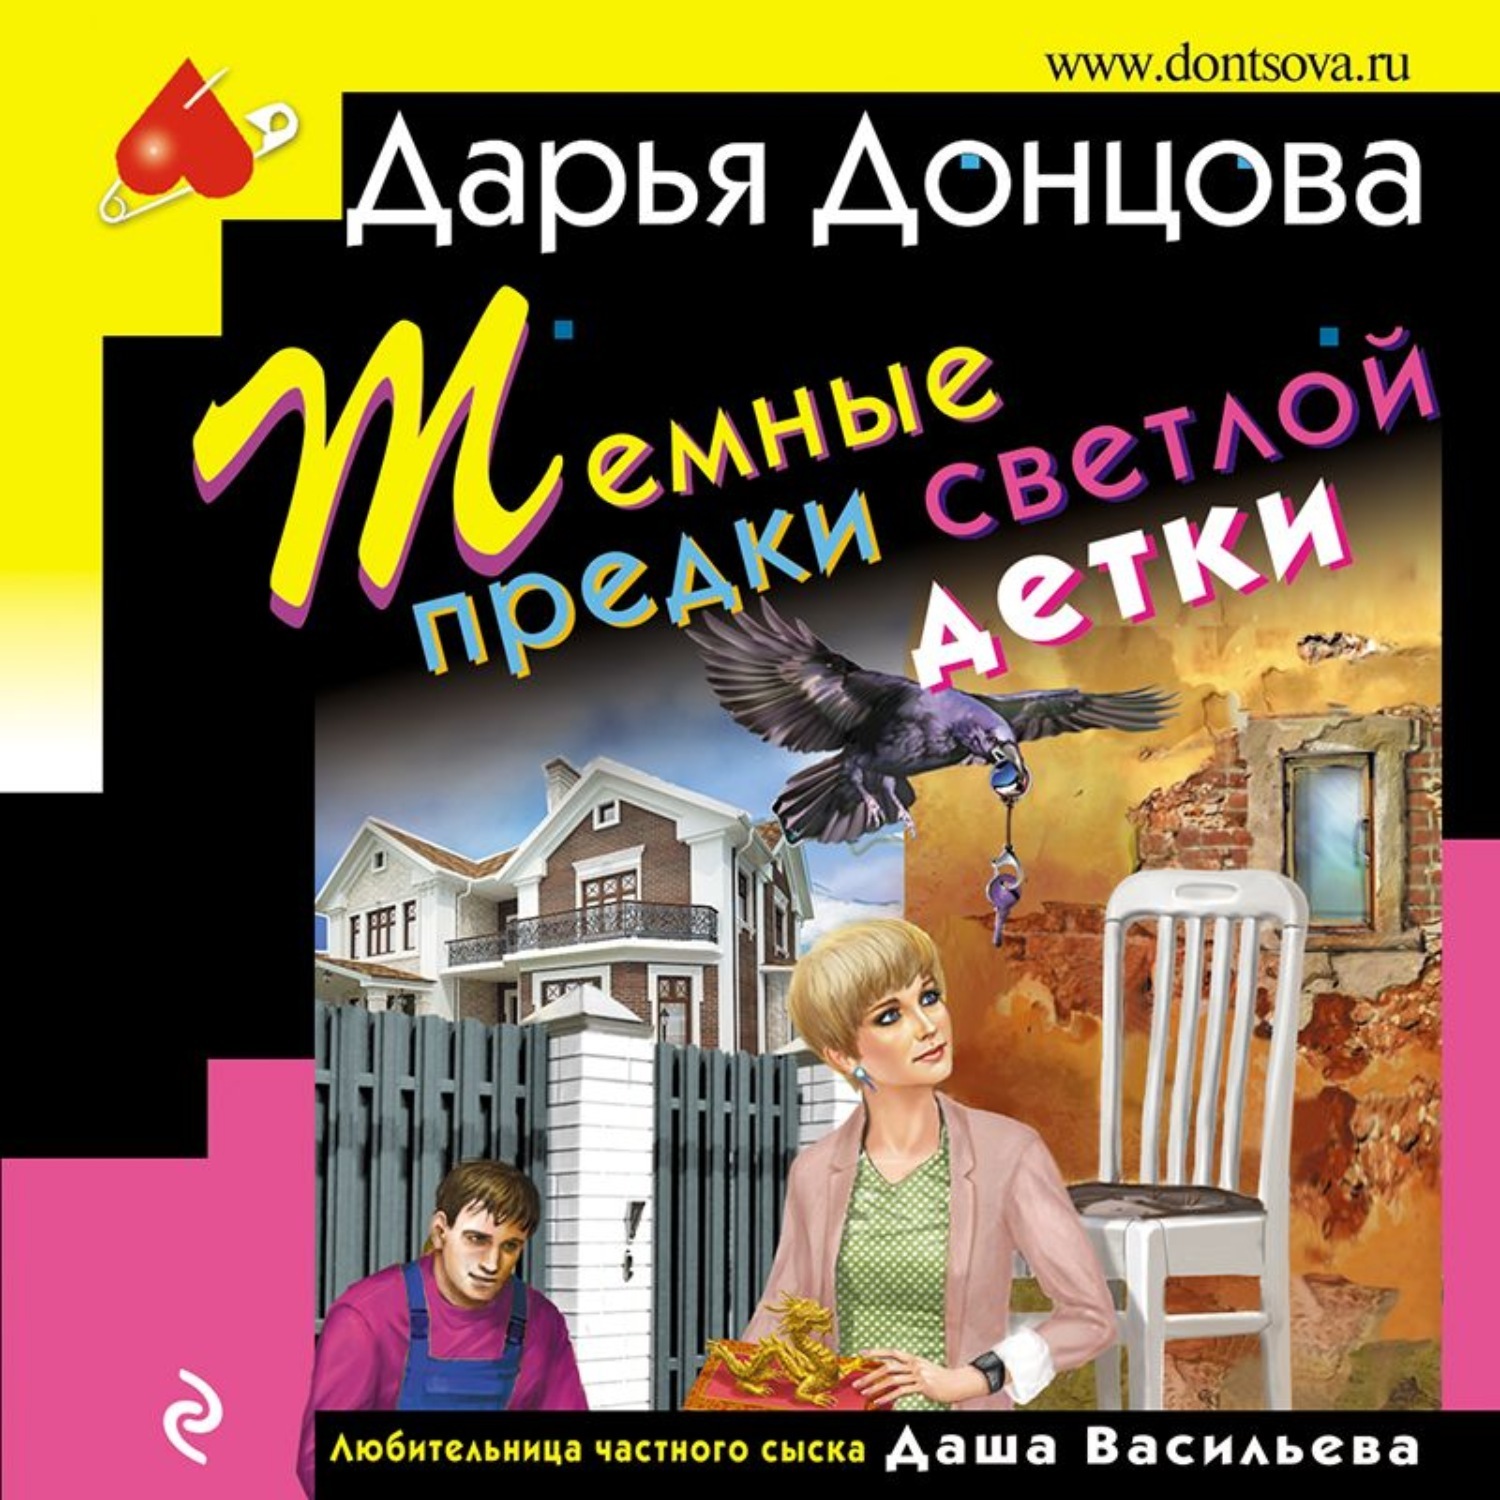 Донцова книги про дашу